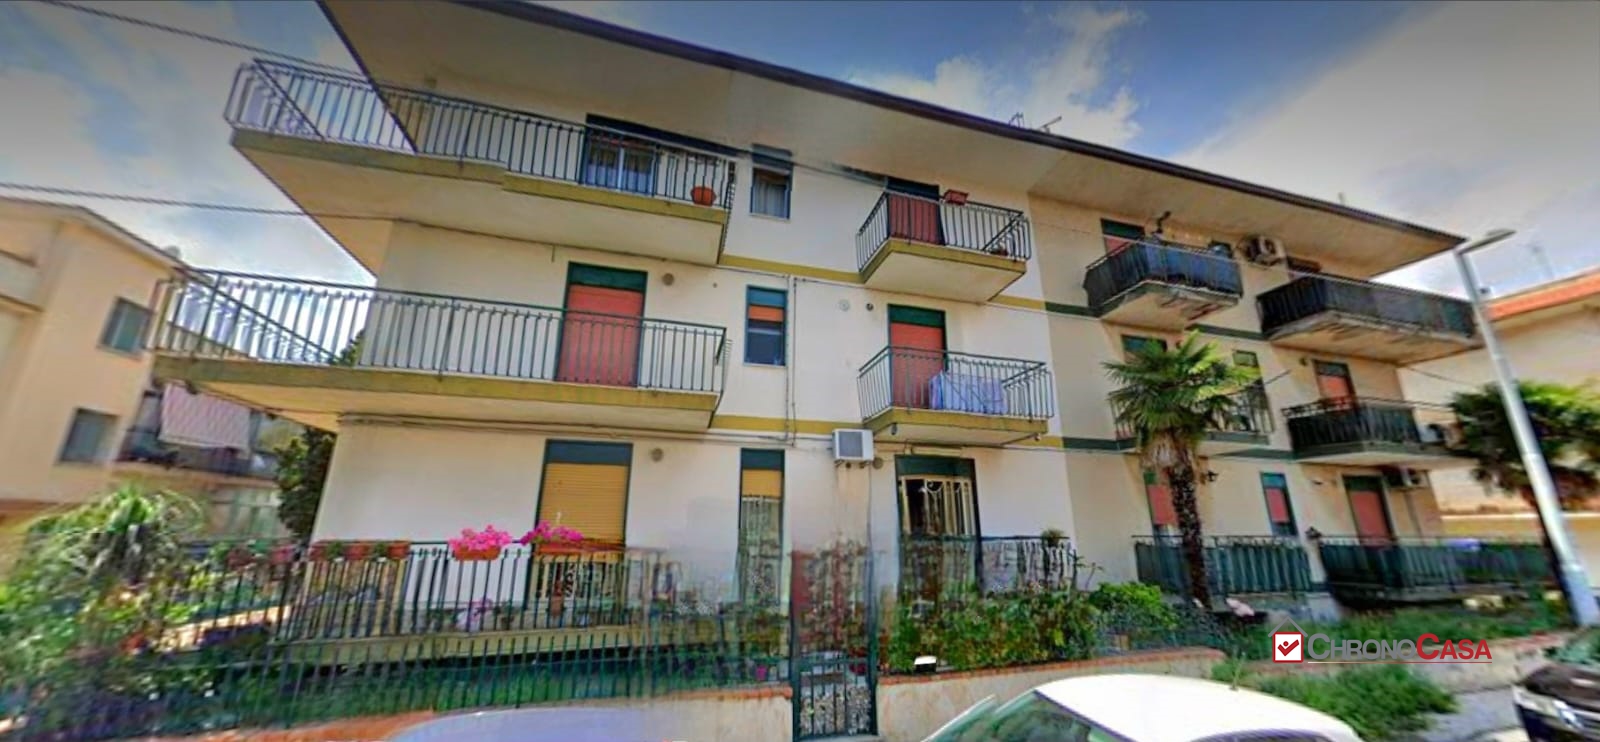 Appartamento in vendita a Mascali, 3 locali, prezzo € 75.000 | PortaleAgenzieImmobiliari.it